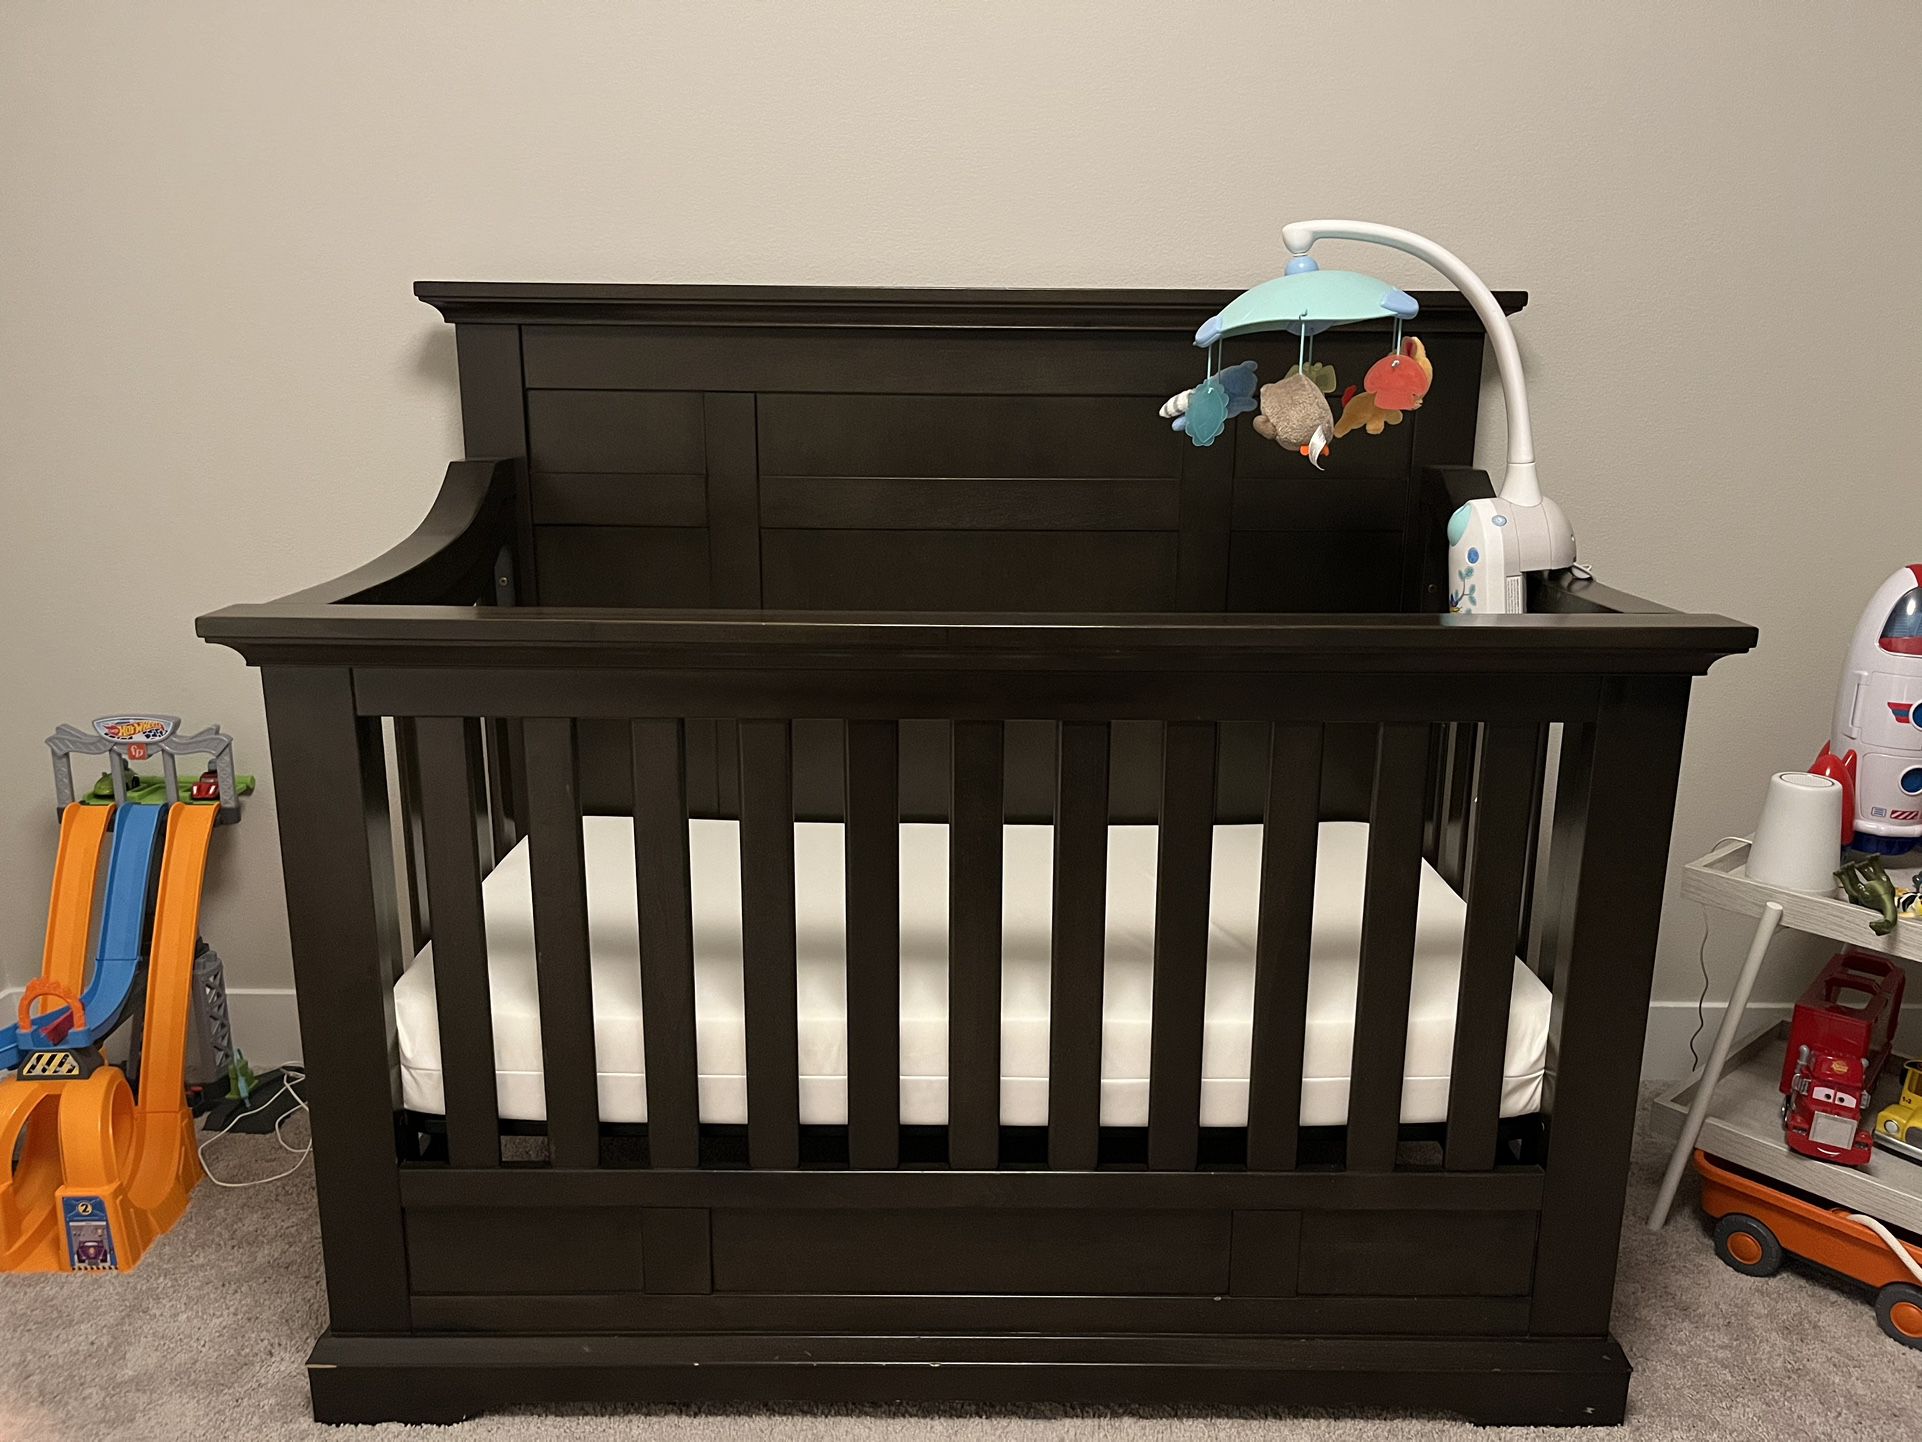 Baby Crib And Matching Dresser